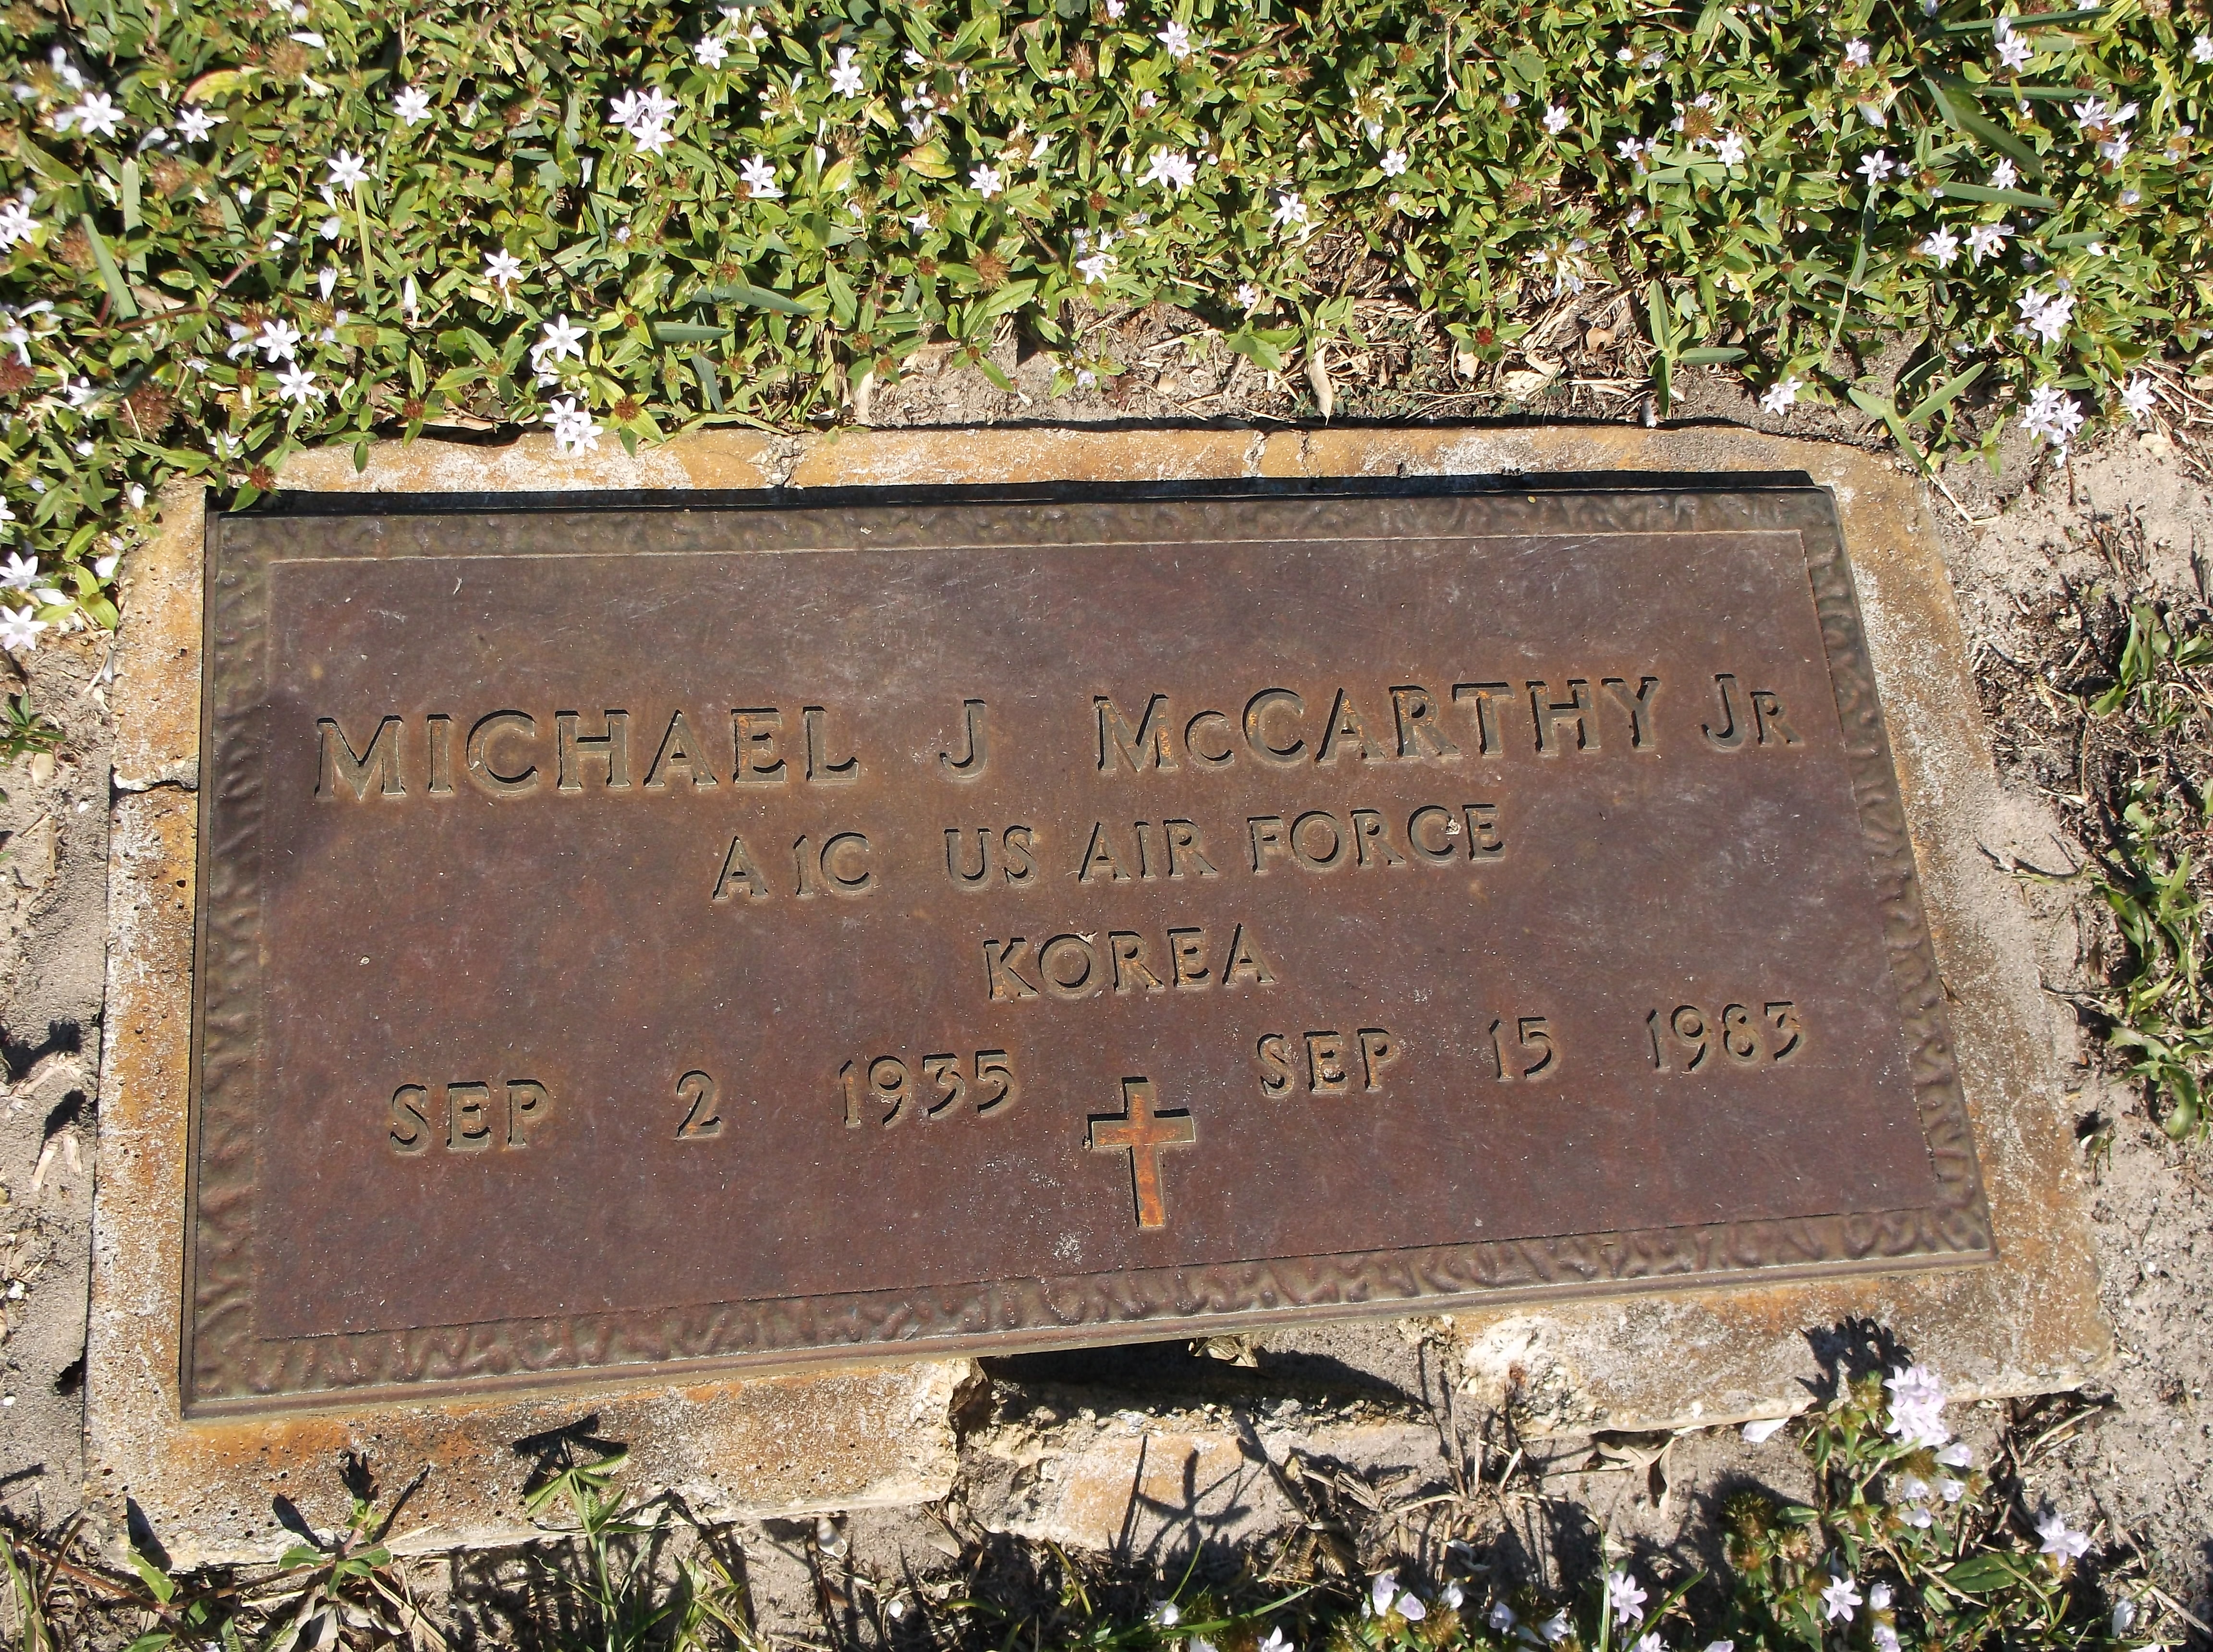 Michael J McCarthy, Jr